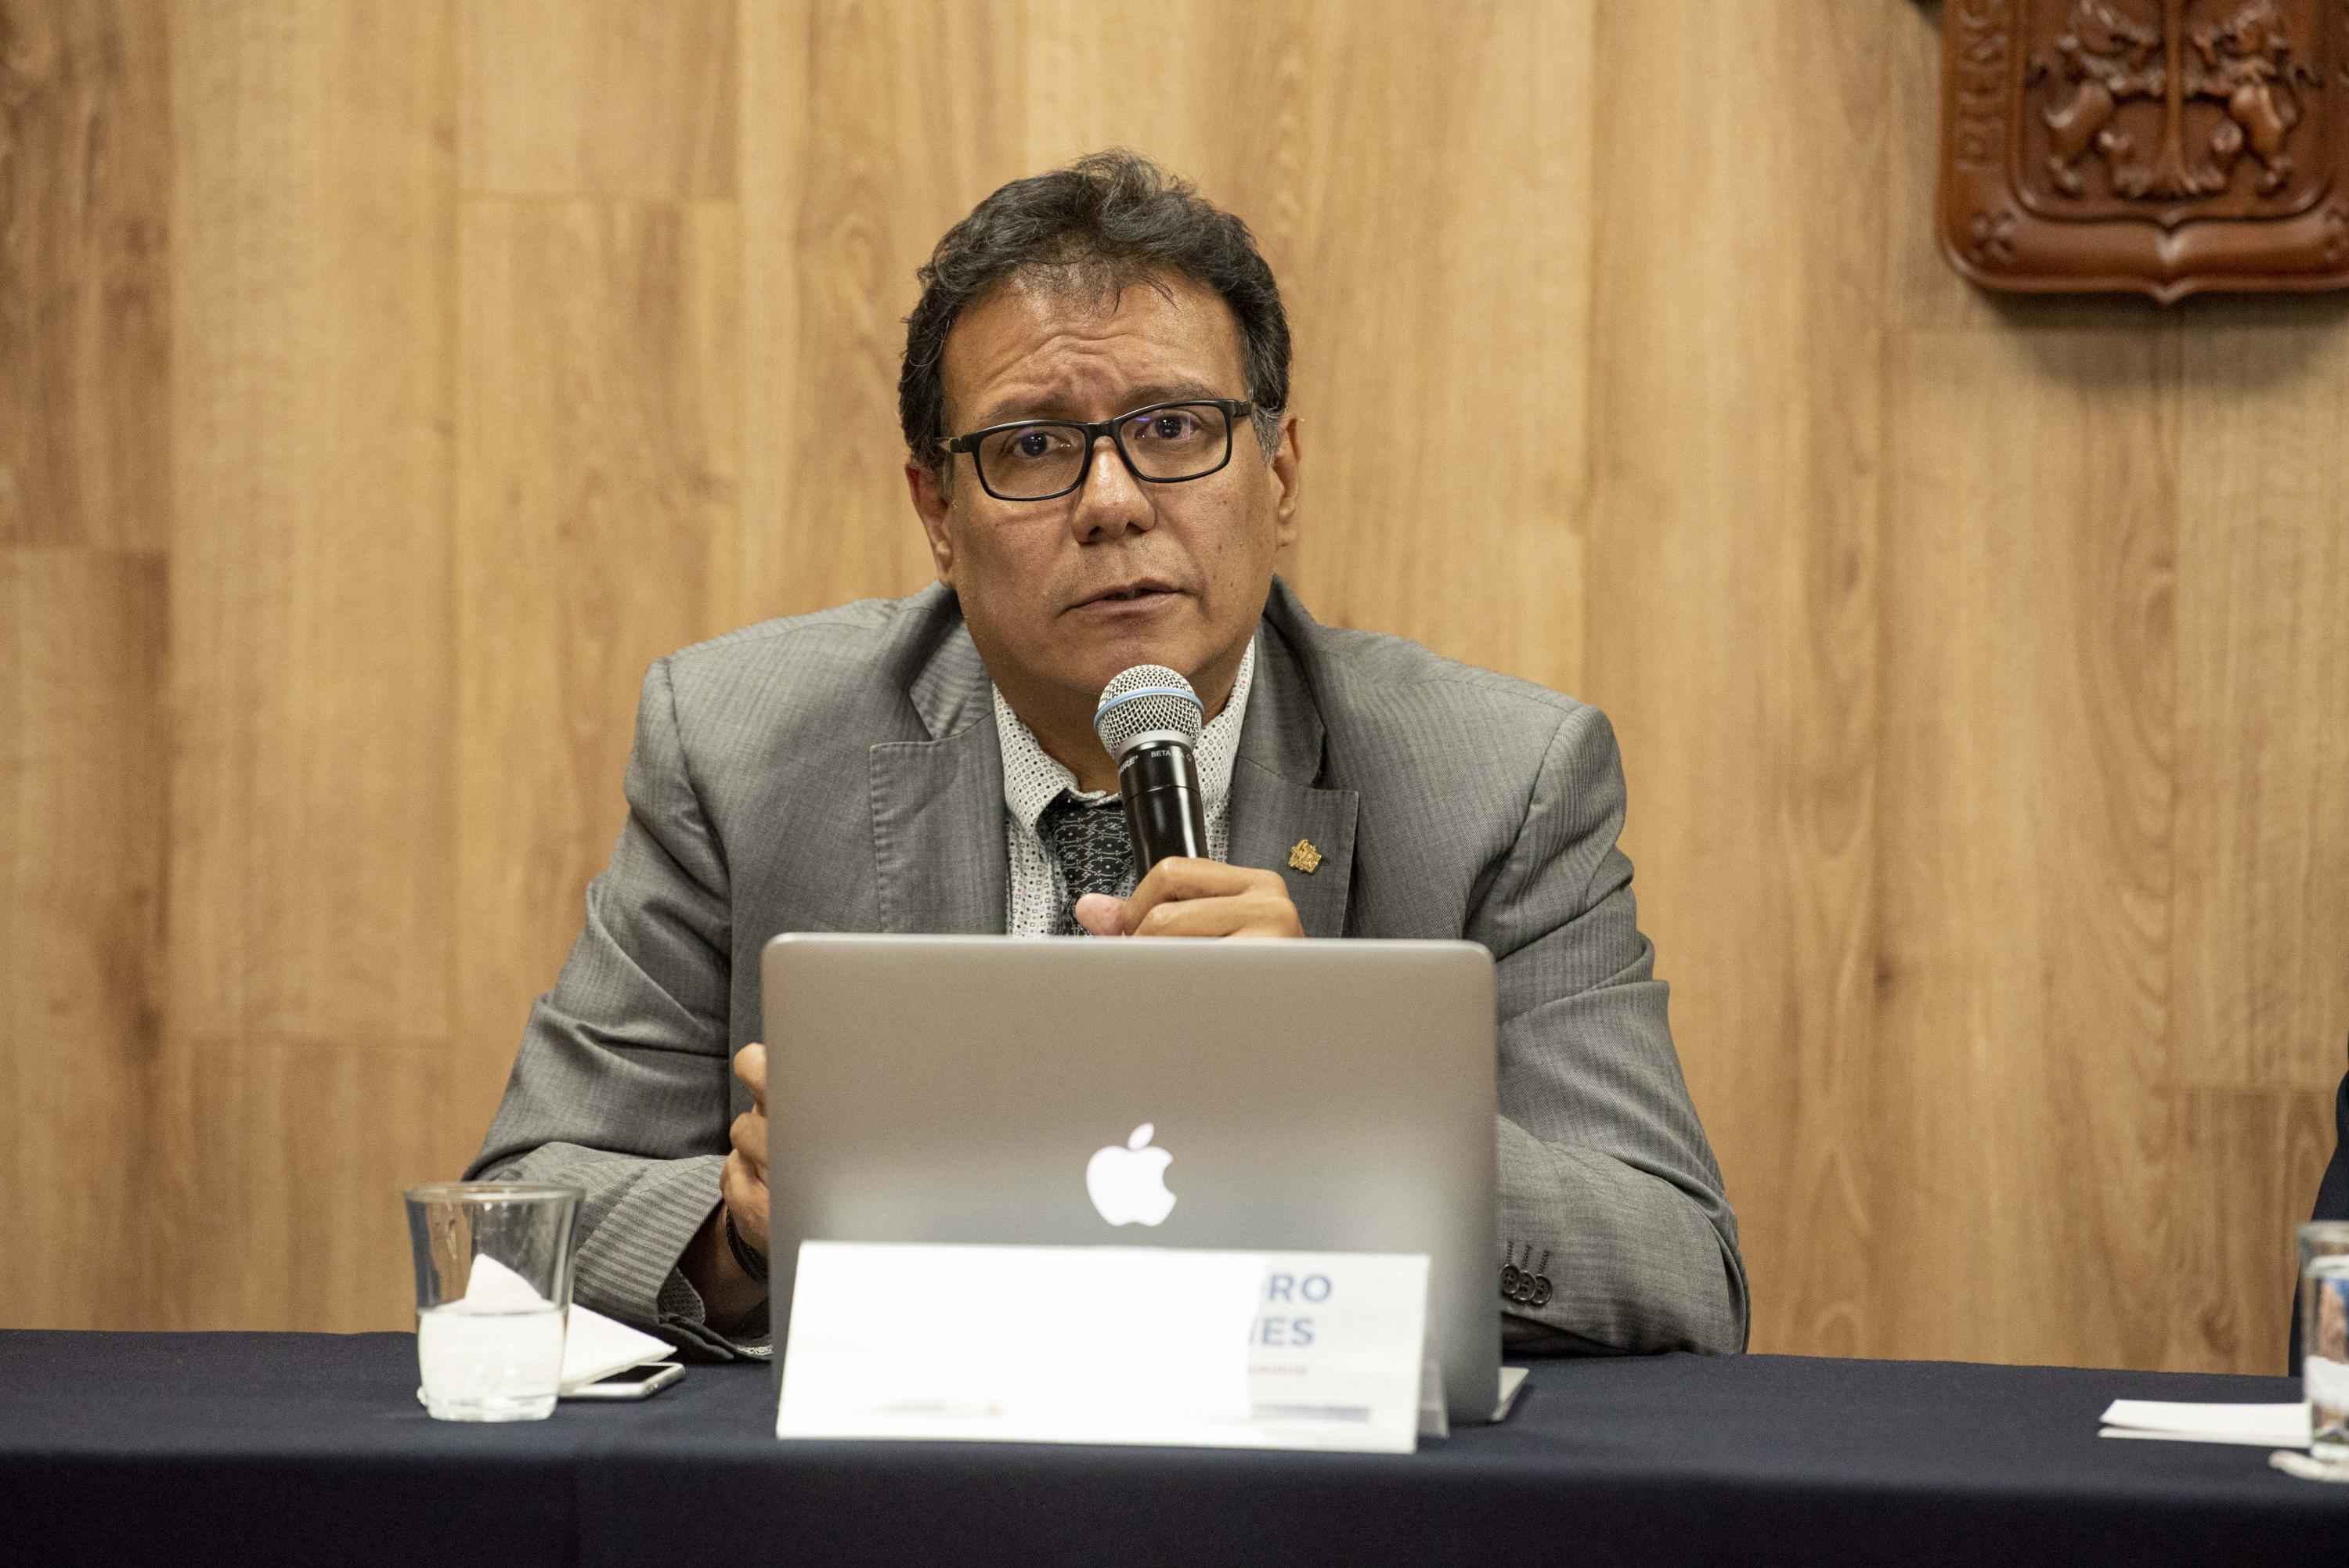 El Coordinador de la Maestría de Innovación y Diseño Industrial del plantel, maestro Alejandro Briseño Vilches, en uso de la palabra